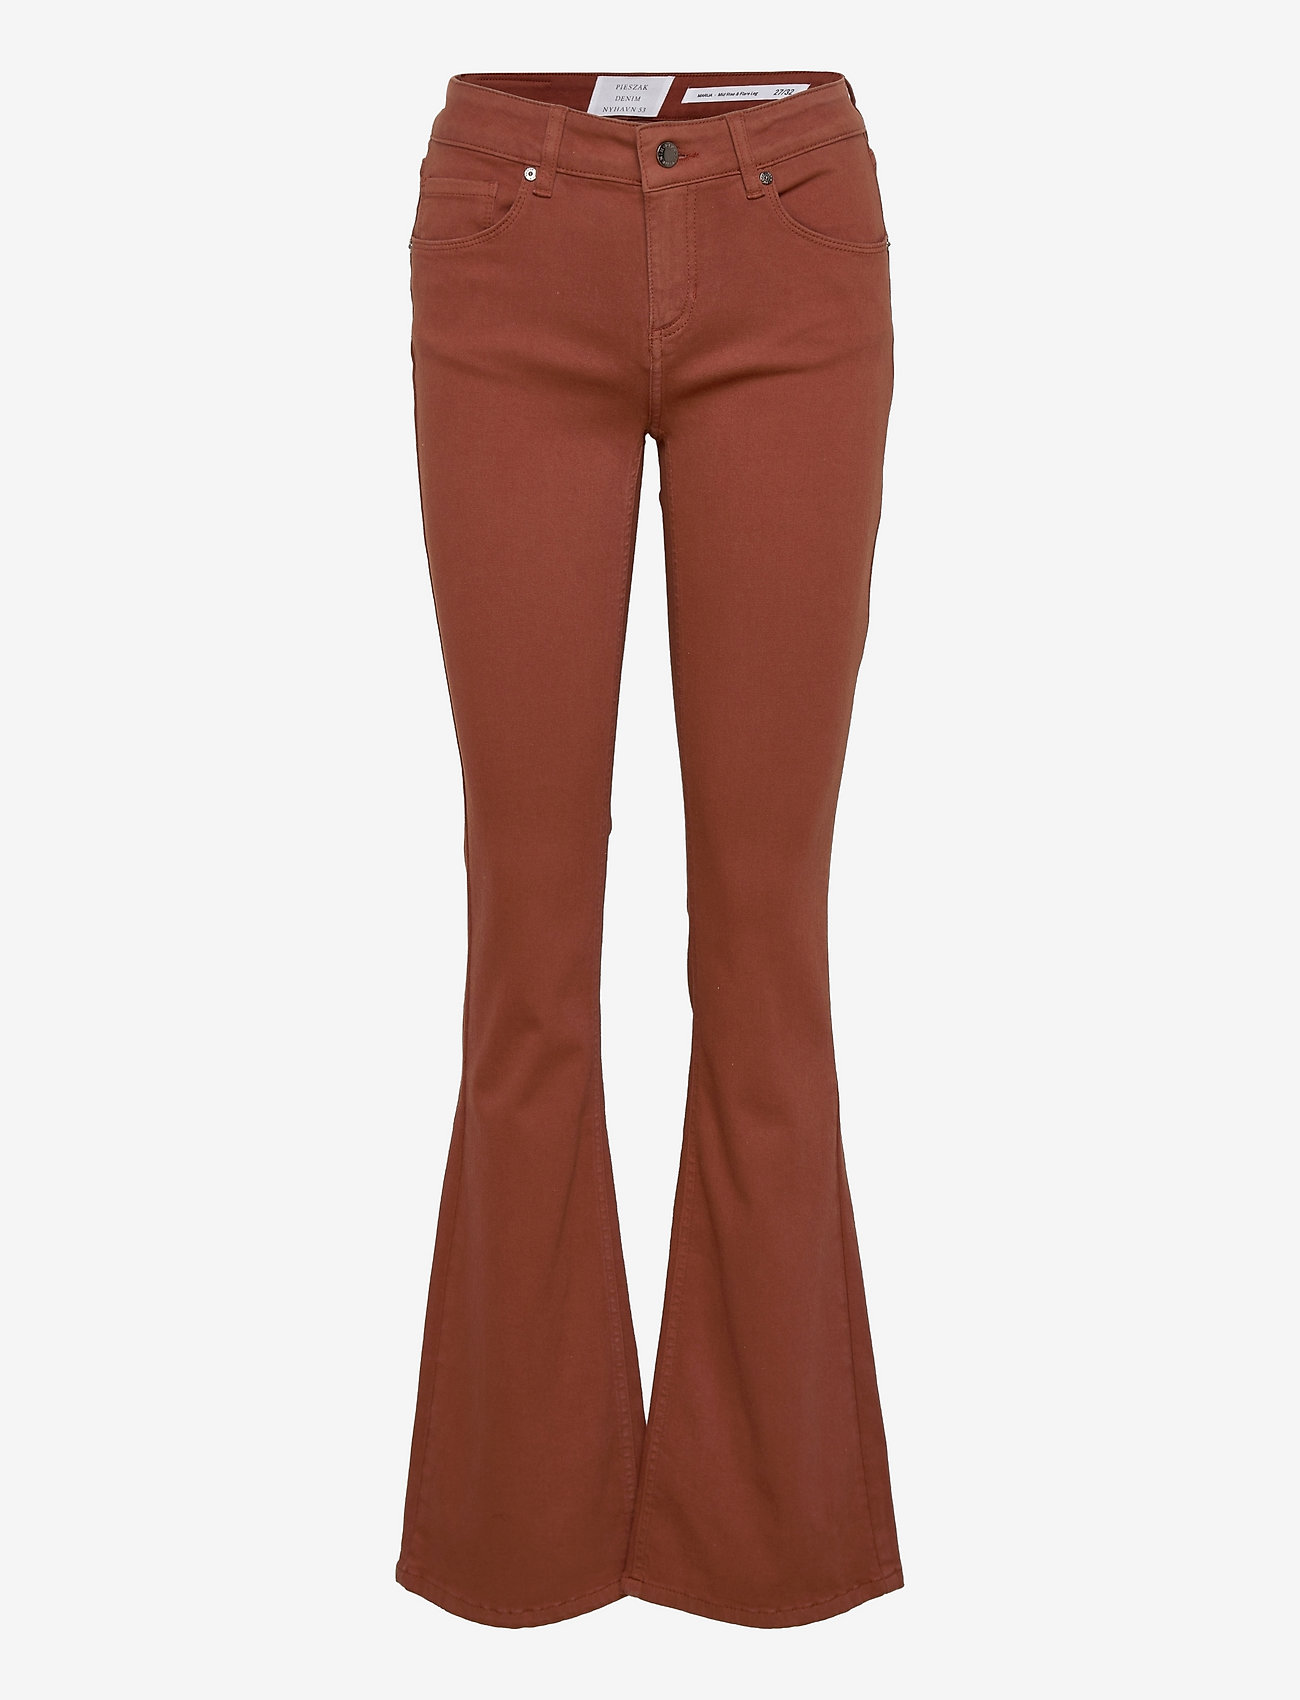 Pieszak - Marija flare jeans Col. - flared jeans - brown - 0